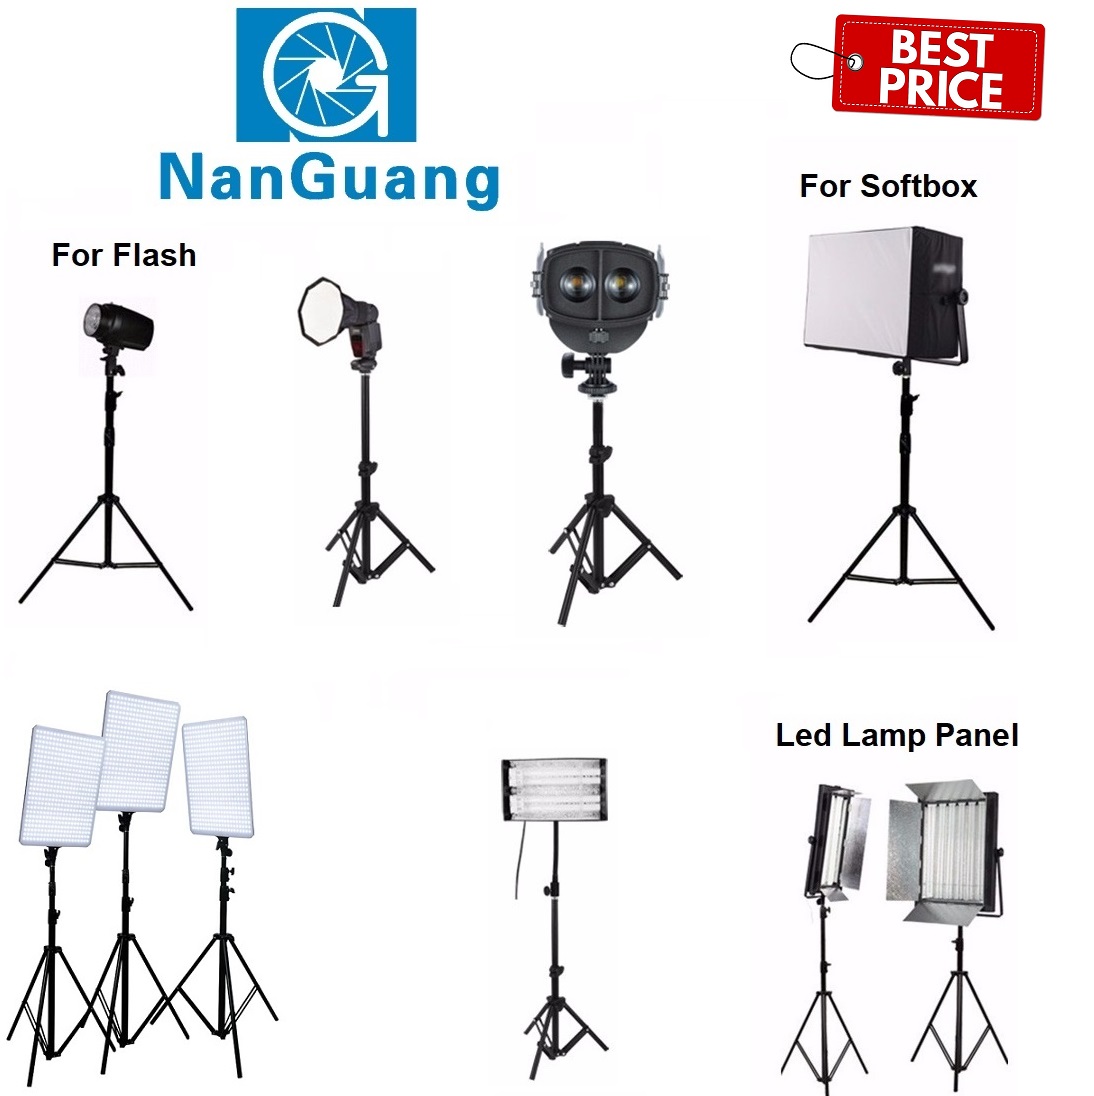 Nanguang NG-L280 STATIVO NGL280 UK STOCK 